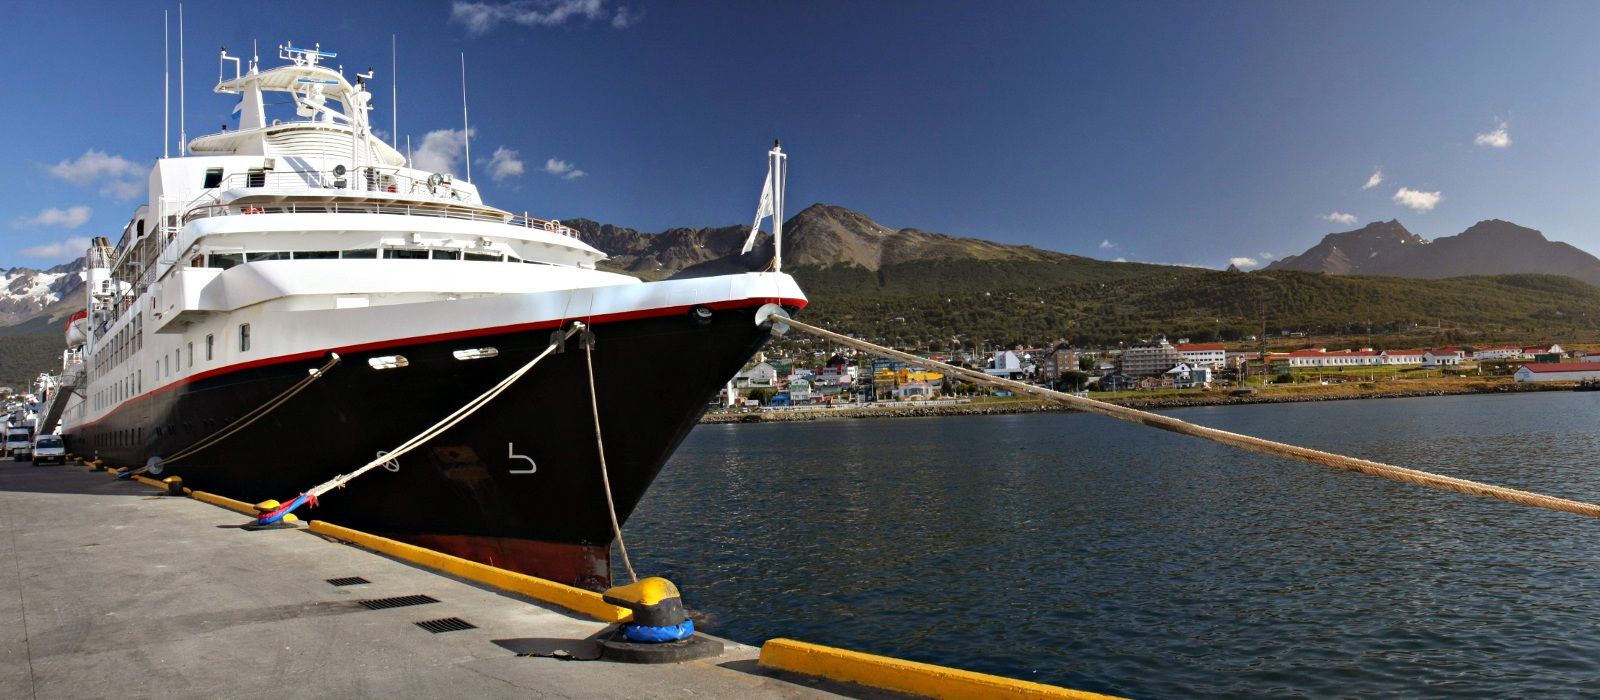 ushuaia argentina cruise